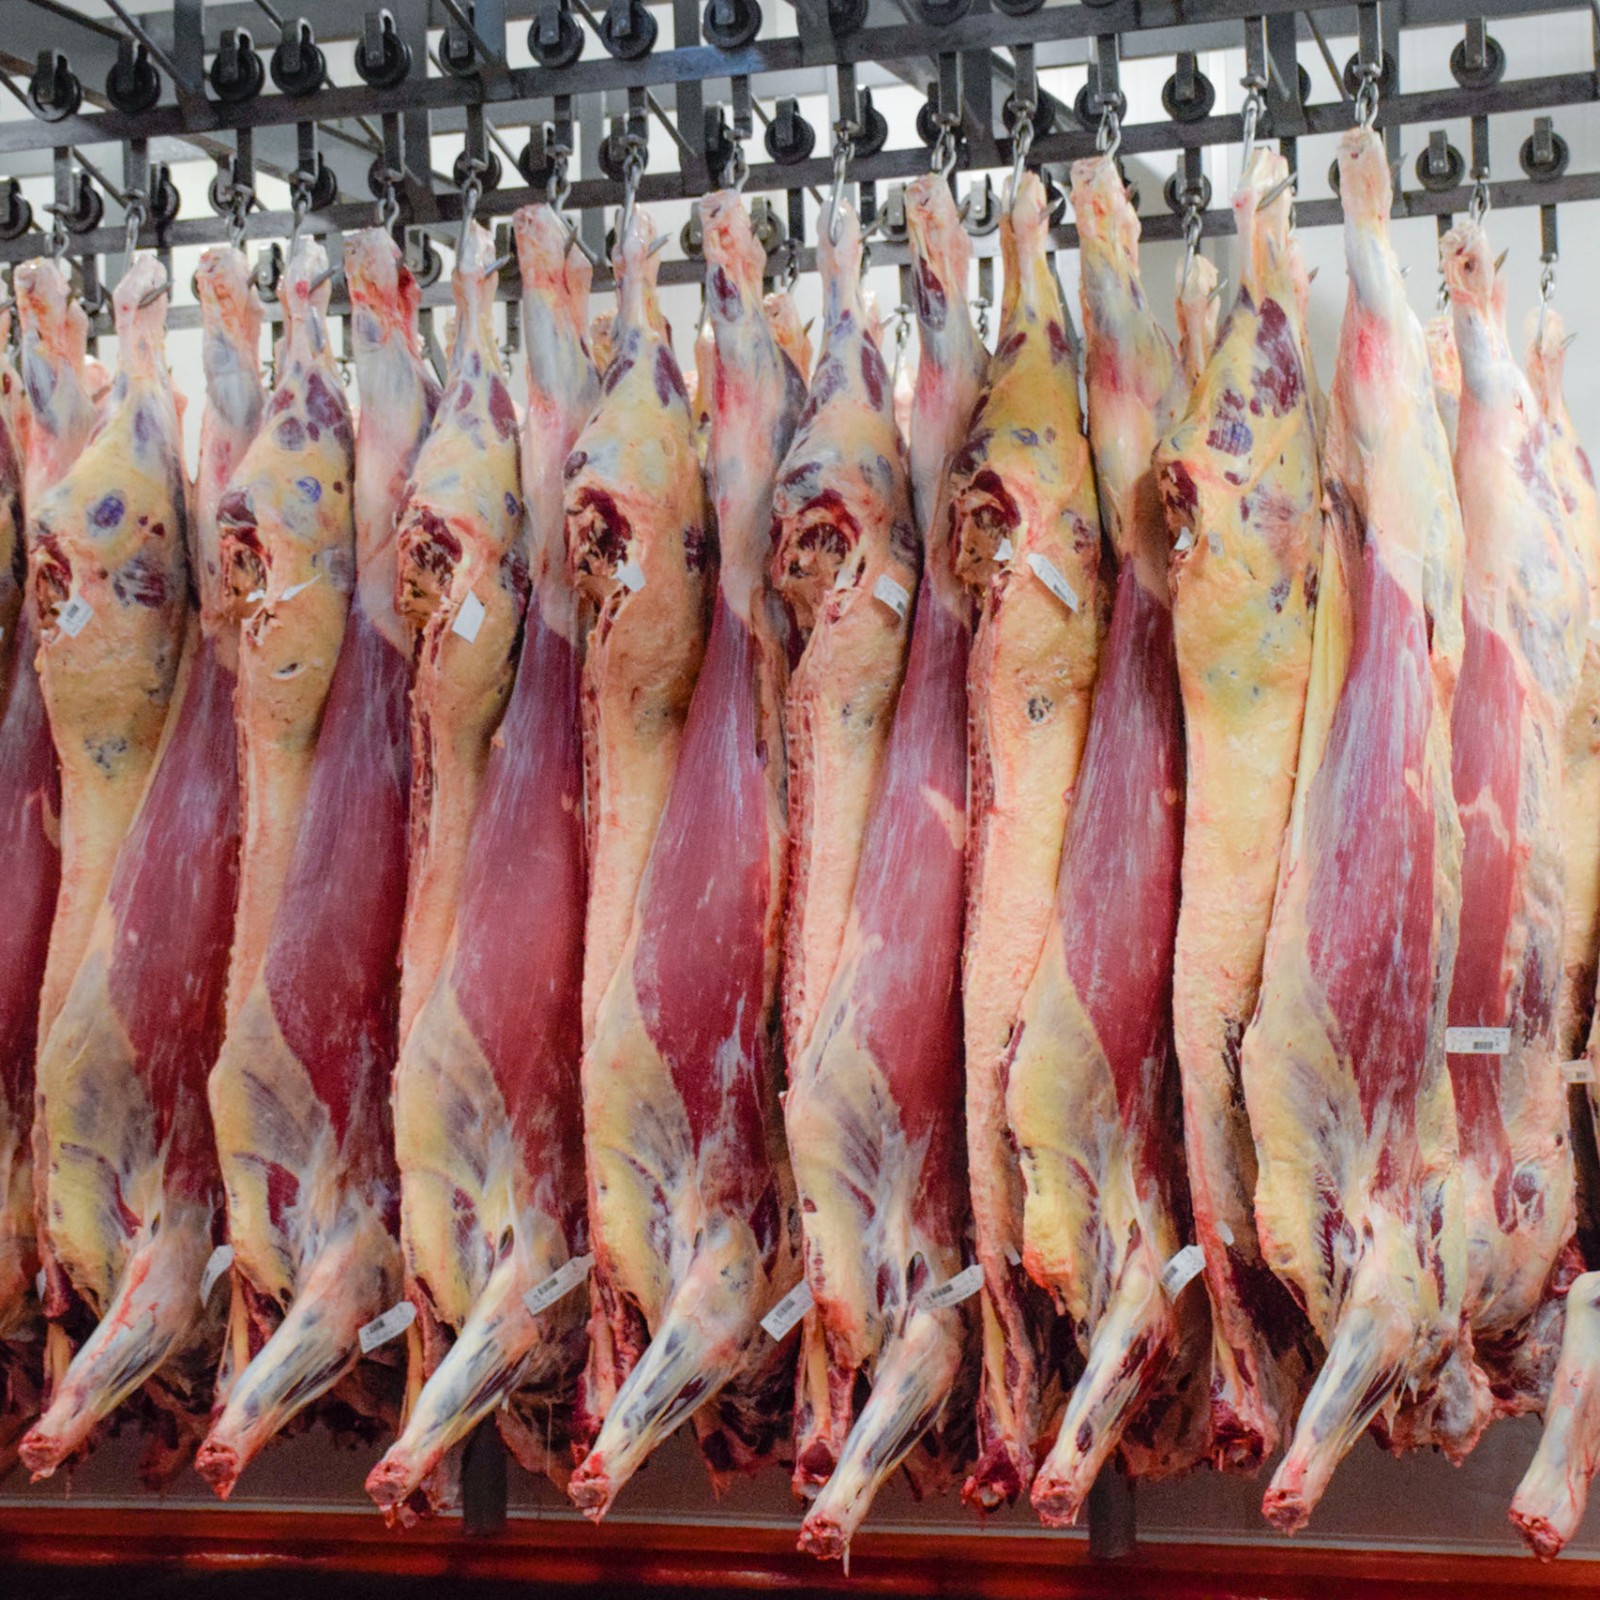 【期货】乌拉圭22厂后胸肉批发1柜起批6月底发货